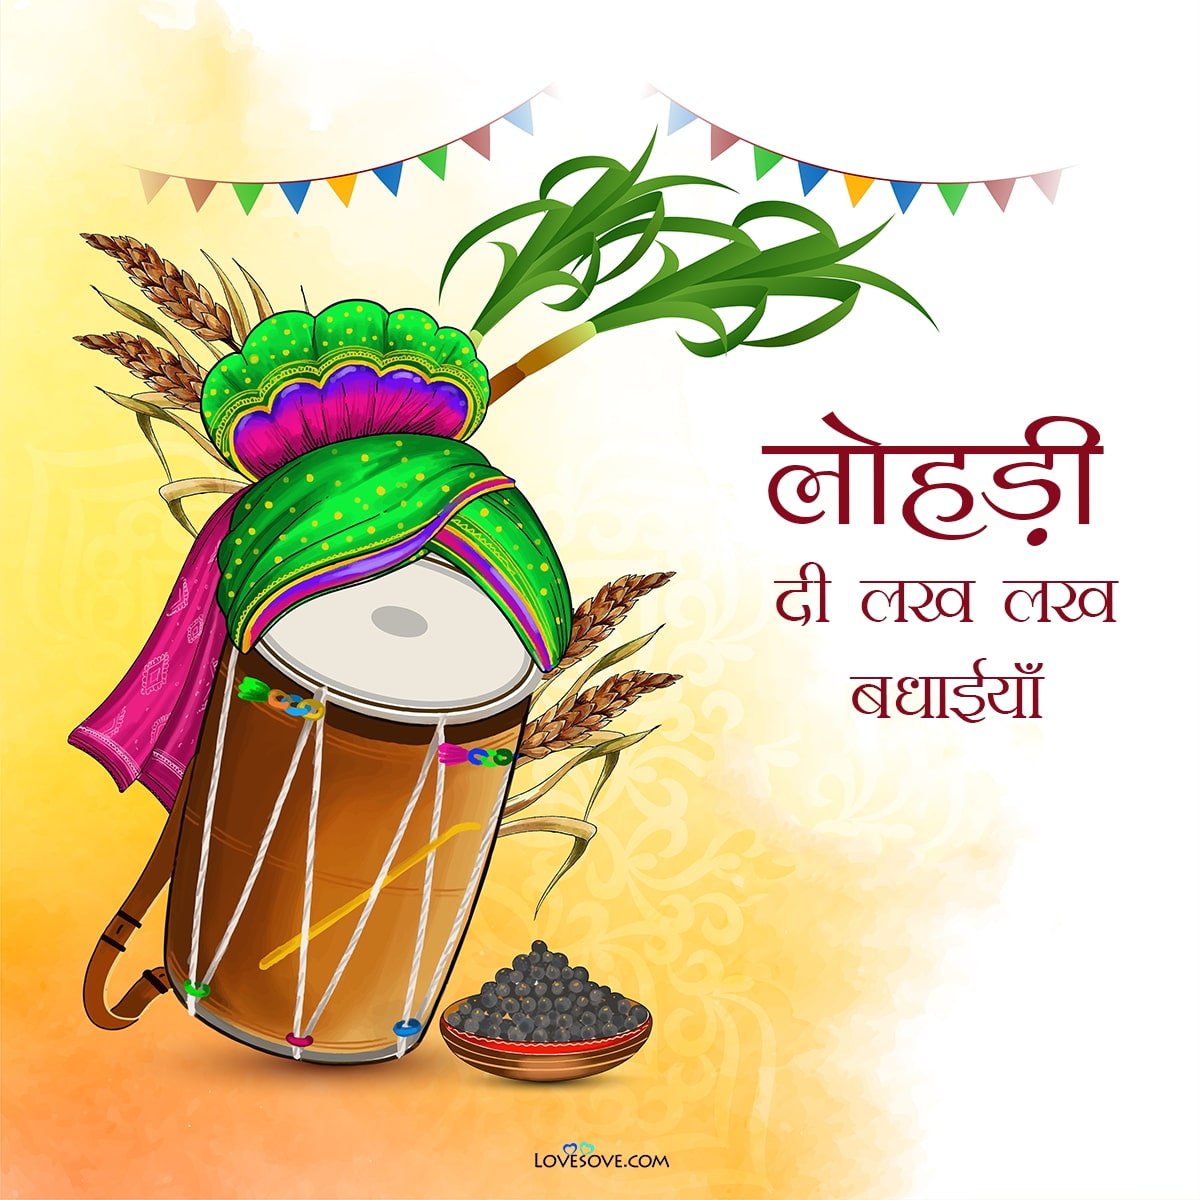 Happy Lohri Wishes in hindi Images, लोहड़ी की शुभकामनाएं संदेश, लोहड़ी की हार्दिक बधाई